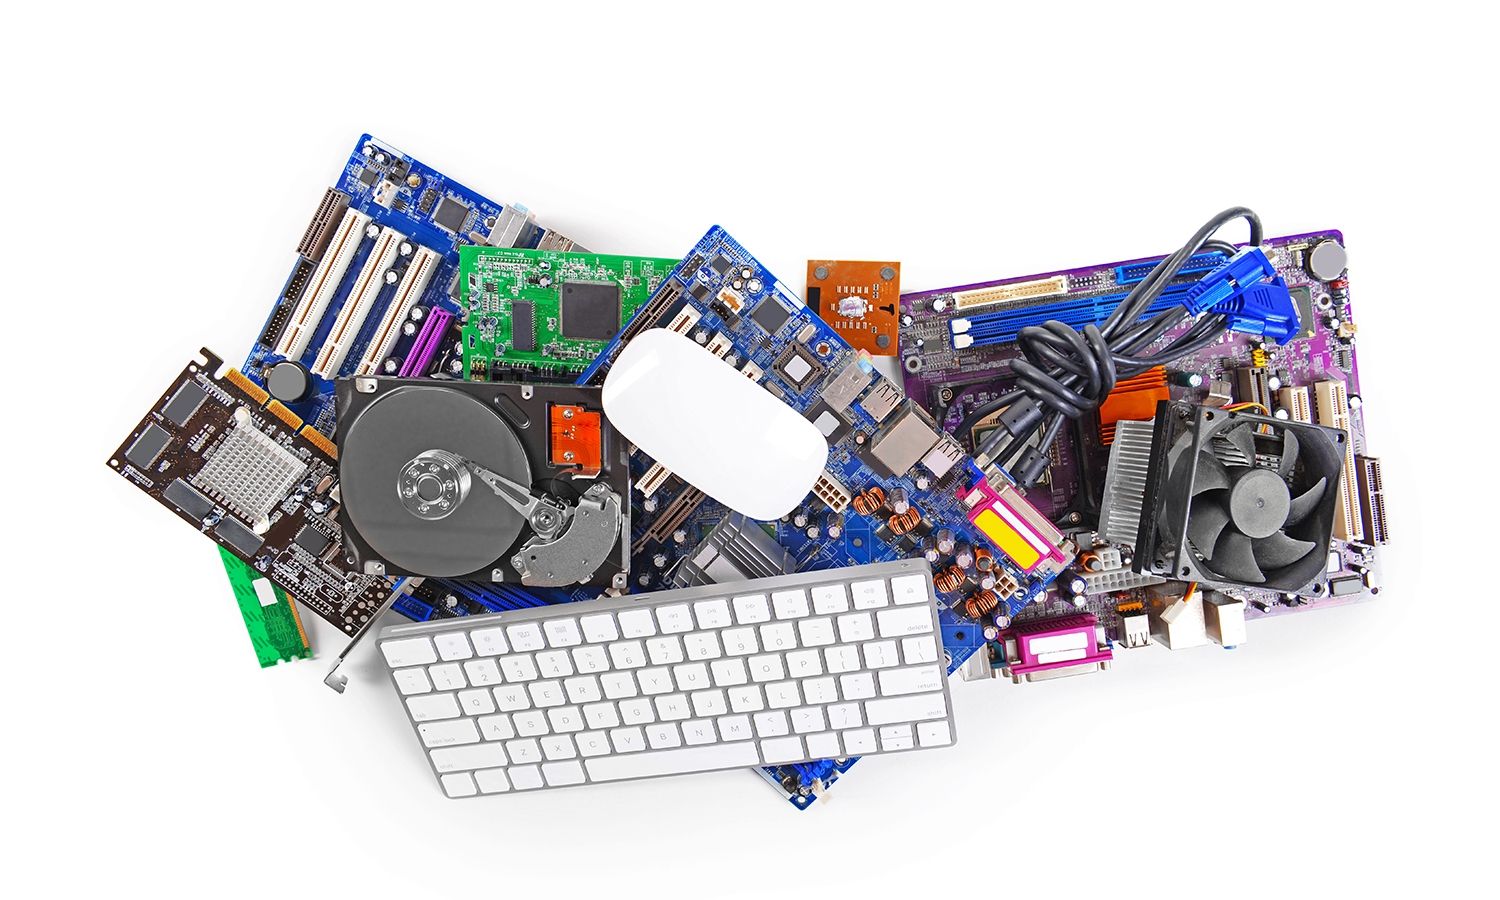 Coleção de hardware de computador, incluindo um teclado e mouse